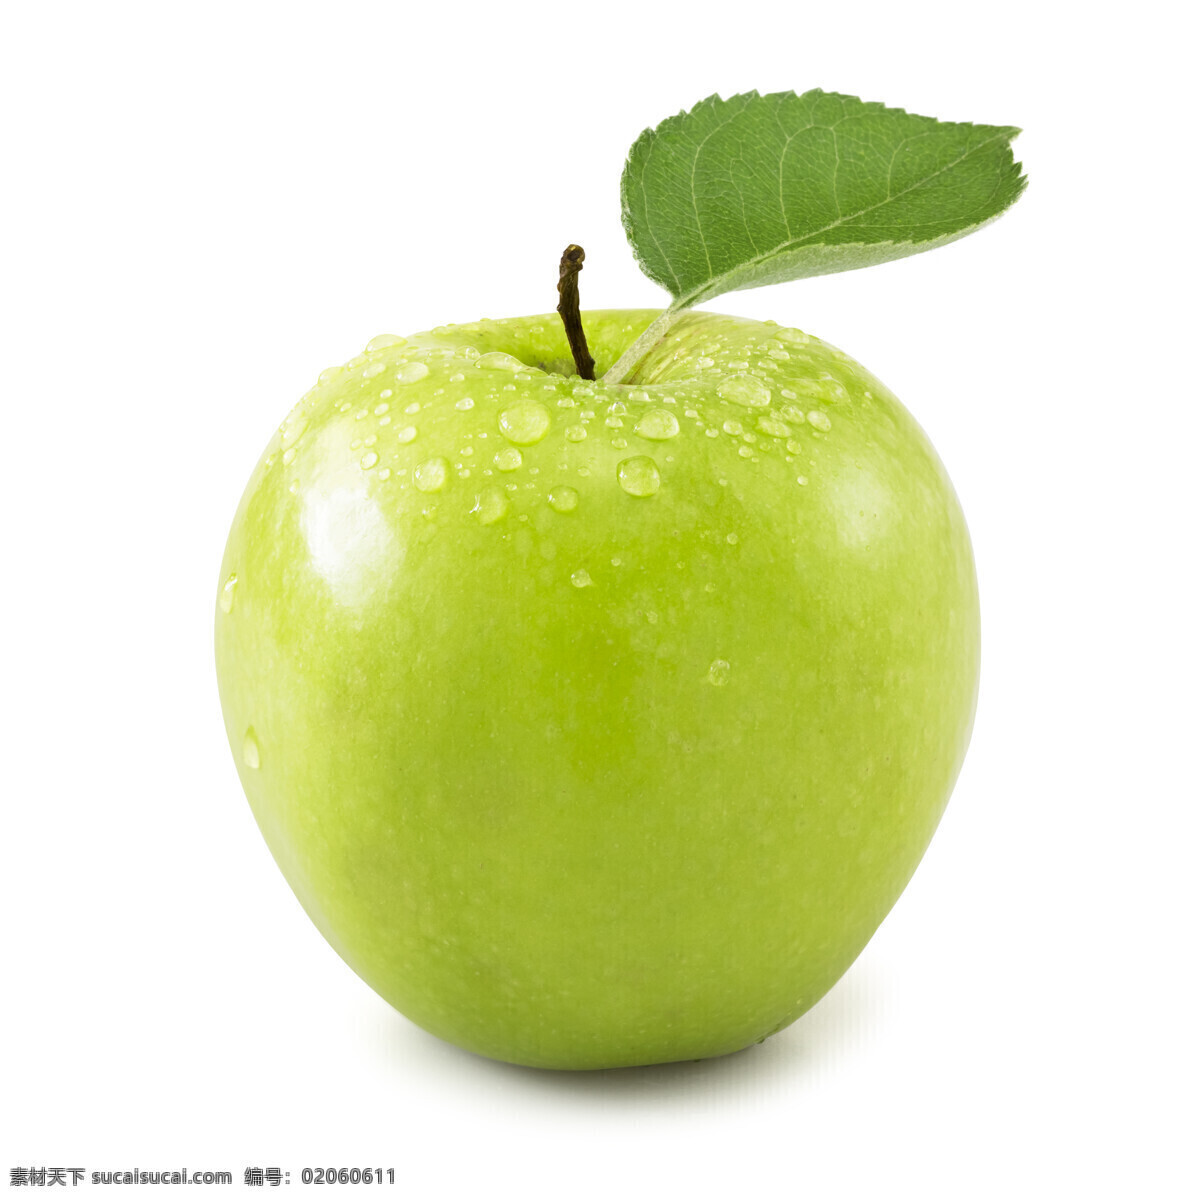 红苹果 青苹果 绿苹果 新鲜水果 苹果汁 饮品 果蔬 美食 果子 红富士苹果 进口苹果 进口水果 进口 蛇果 进口蛇果 平安果 餐饮美食 食物原料